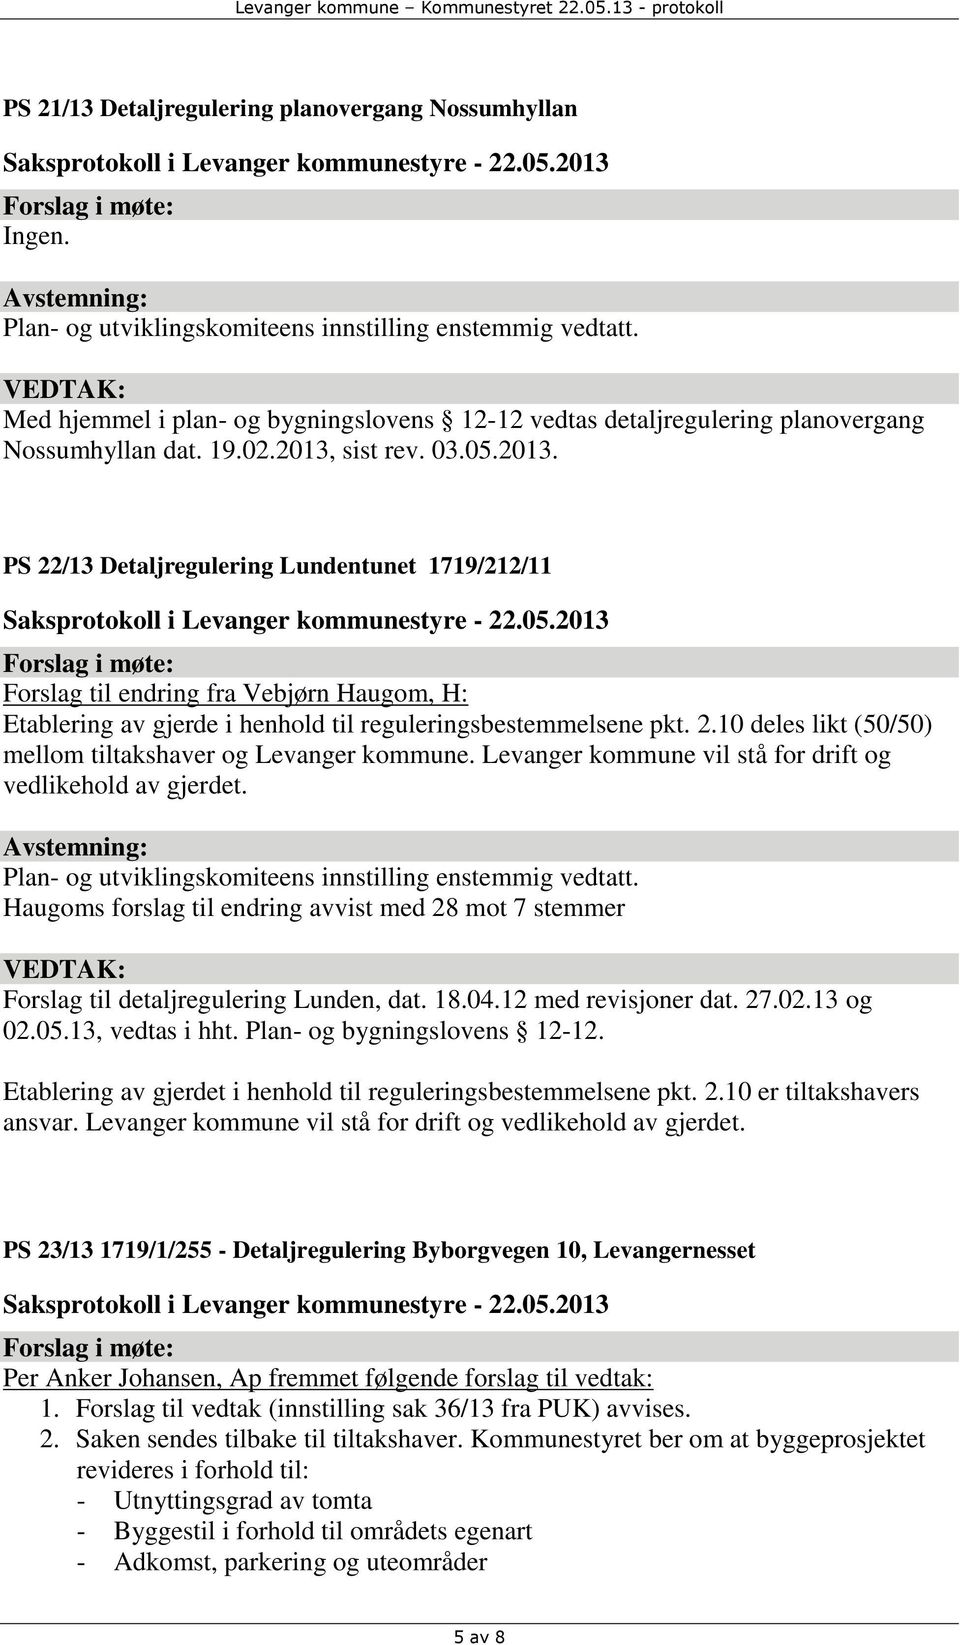 sist rev. 03.05.2013. PS 22/13 Detaljregulering Lundentunet 1719/212/11 Forslag til endring fra Vebjørn Haugom, H: Etablering av gjerde i henhold til reguleringsbestemmelsene pkt. 2.10 deles likt (50/50) mellom tiltakshaver og Levanger kommune.